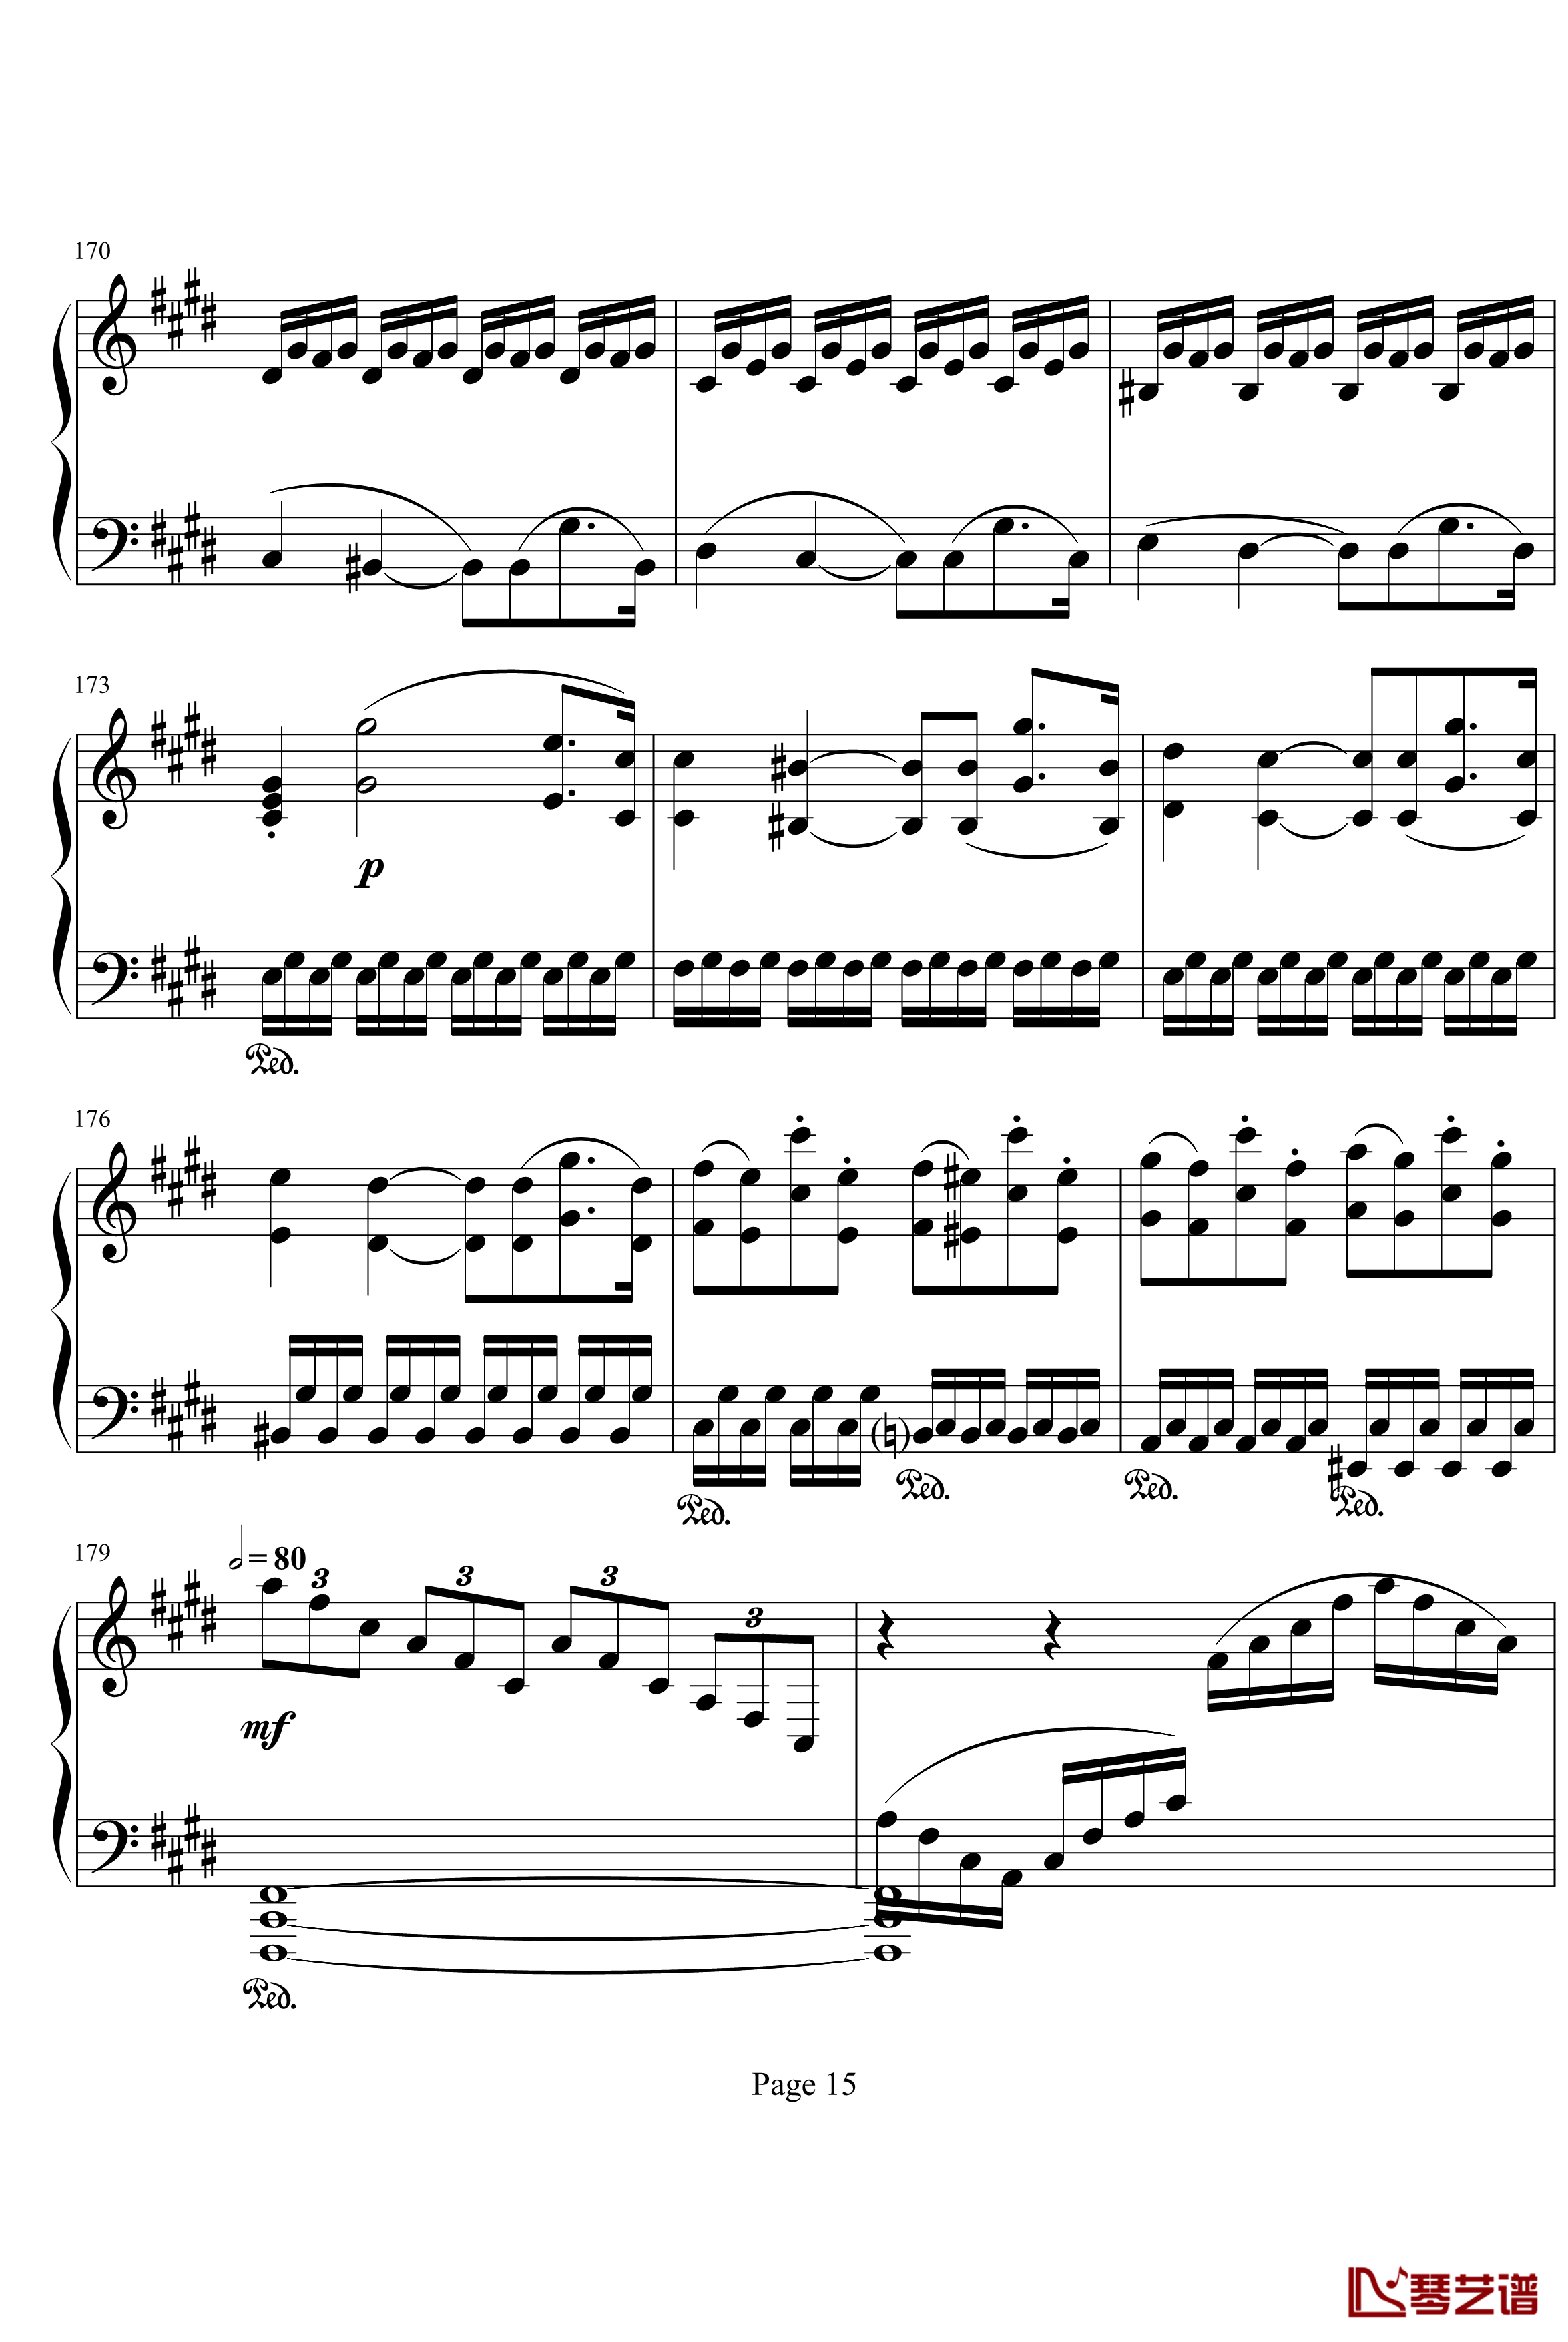 月光奏明曲钢琴谱-作品27之2-贝多芬-beethoven15